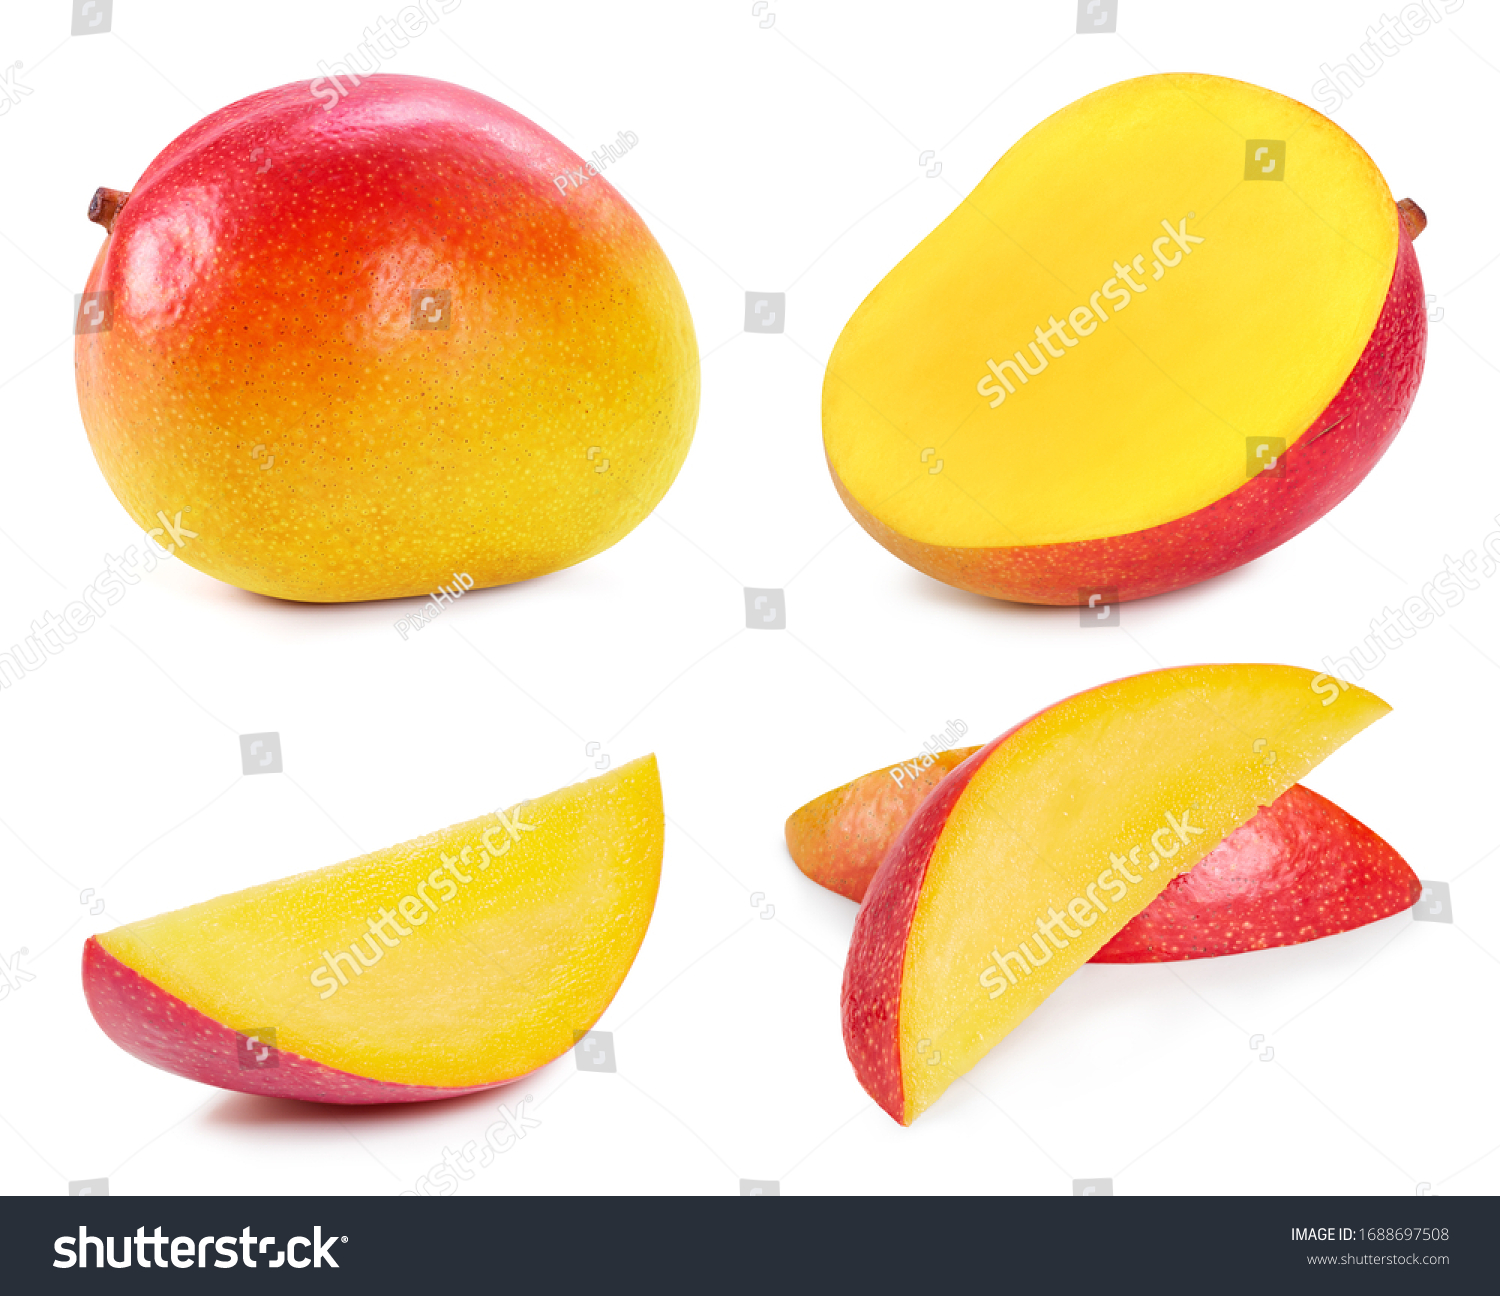 Fresh organic mango isolated on white background. Red mango fruit clipping path. Mango macro studio photo. Collection mango #1688697508